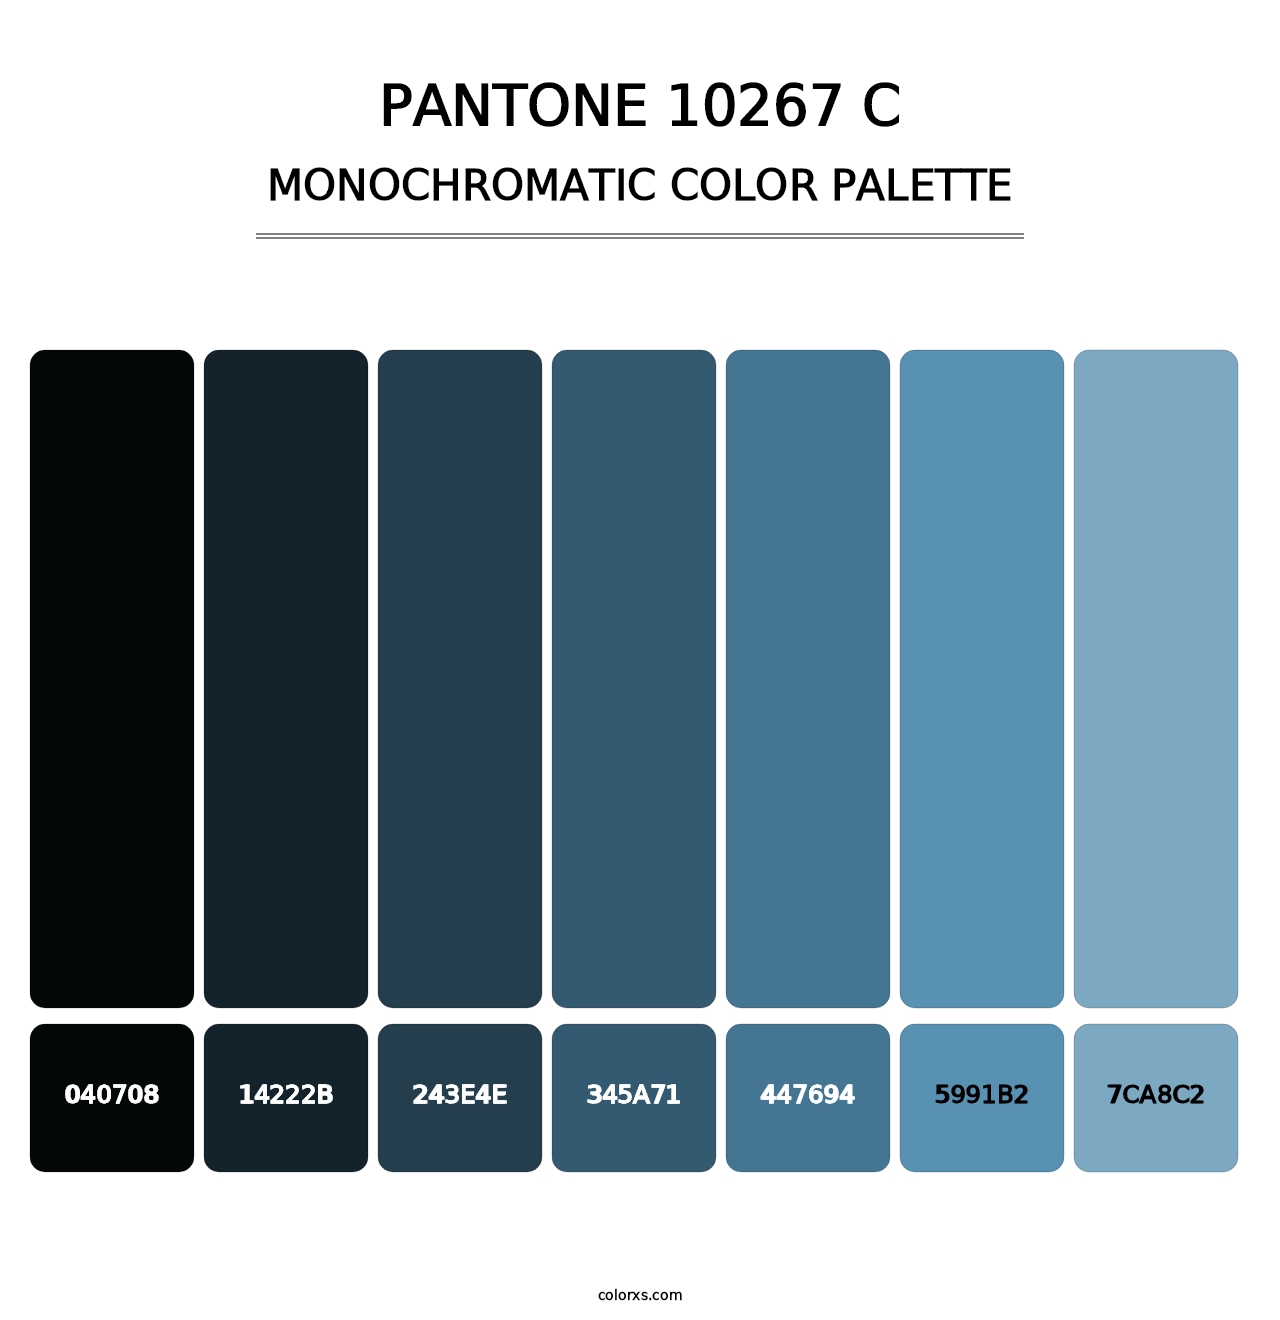 PANTONE 10267 C - Monochromatic Color Palette